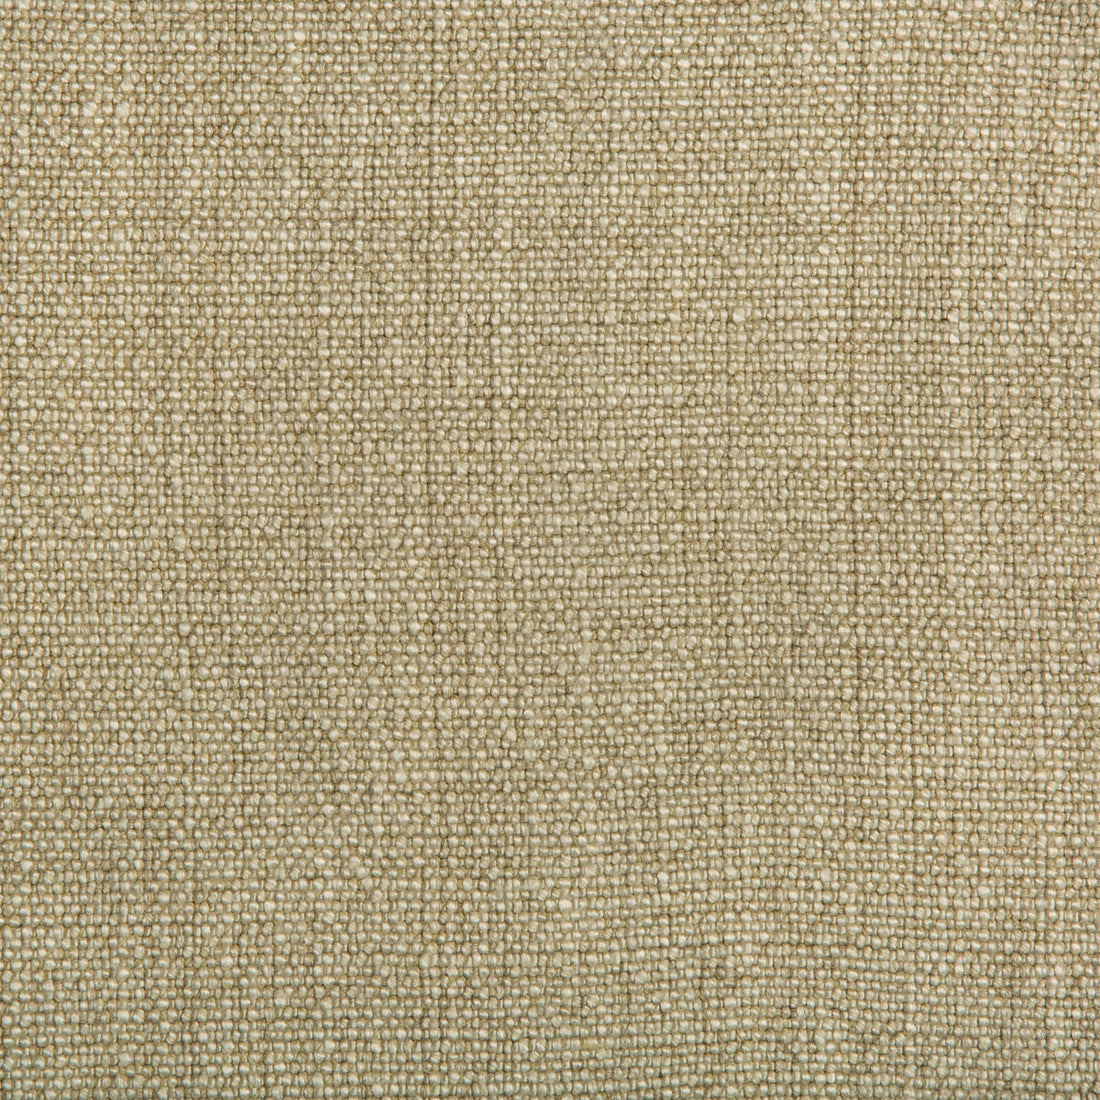 Kravet Basics fabric in 35189-16 color - pattern 35189.16.0 - by Kravet Basics